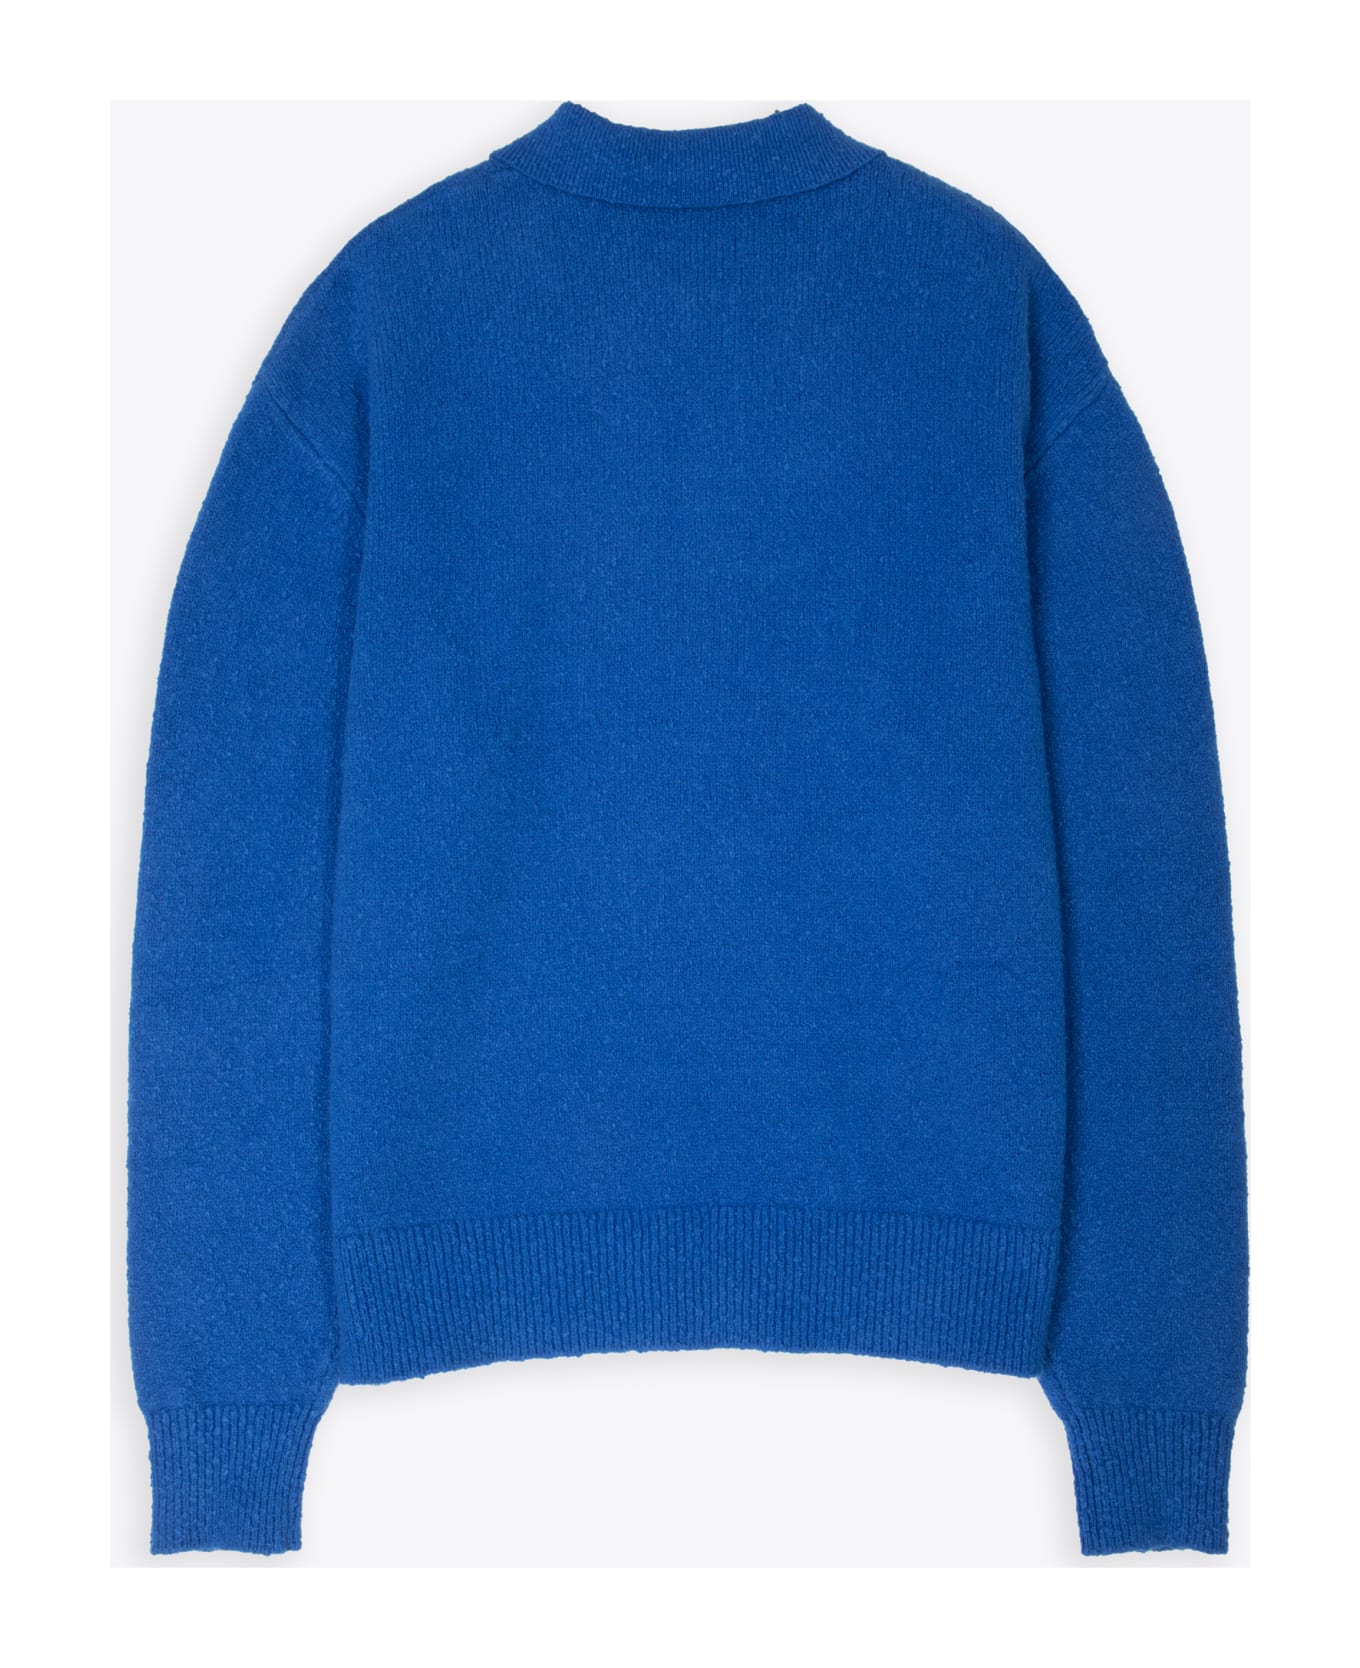 Axel Arigato Team Polo Sweater Royal blue cotton blend polo sweater - Team Polo Sweater - Blu